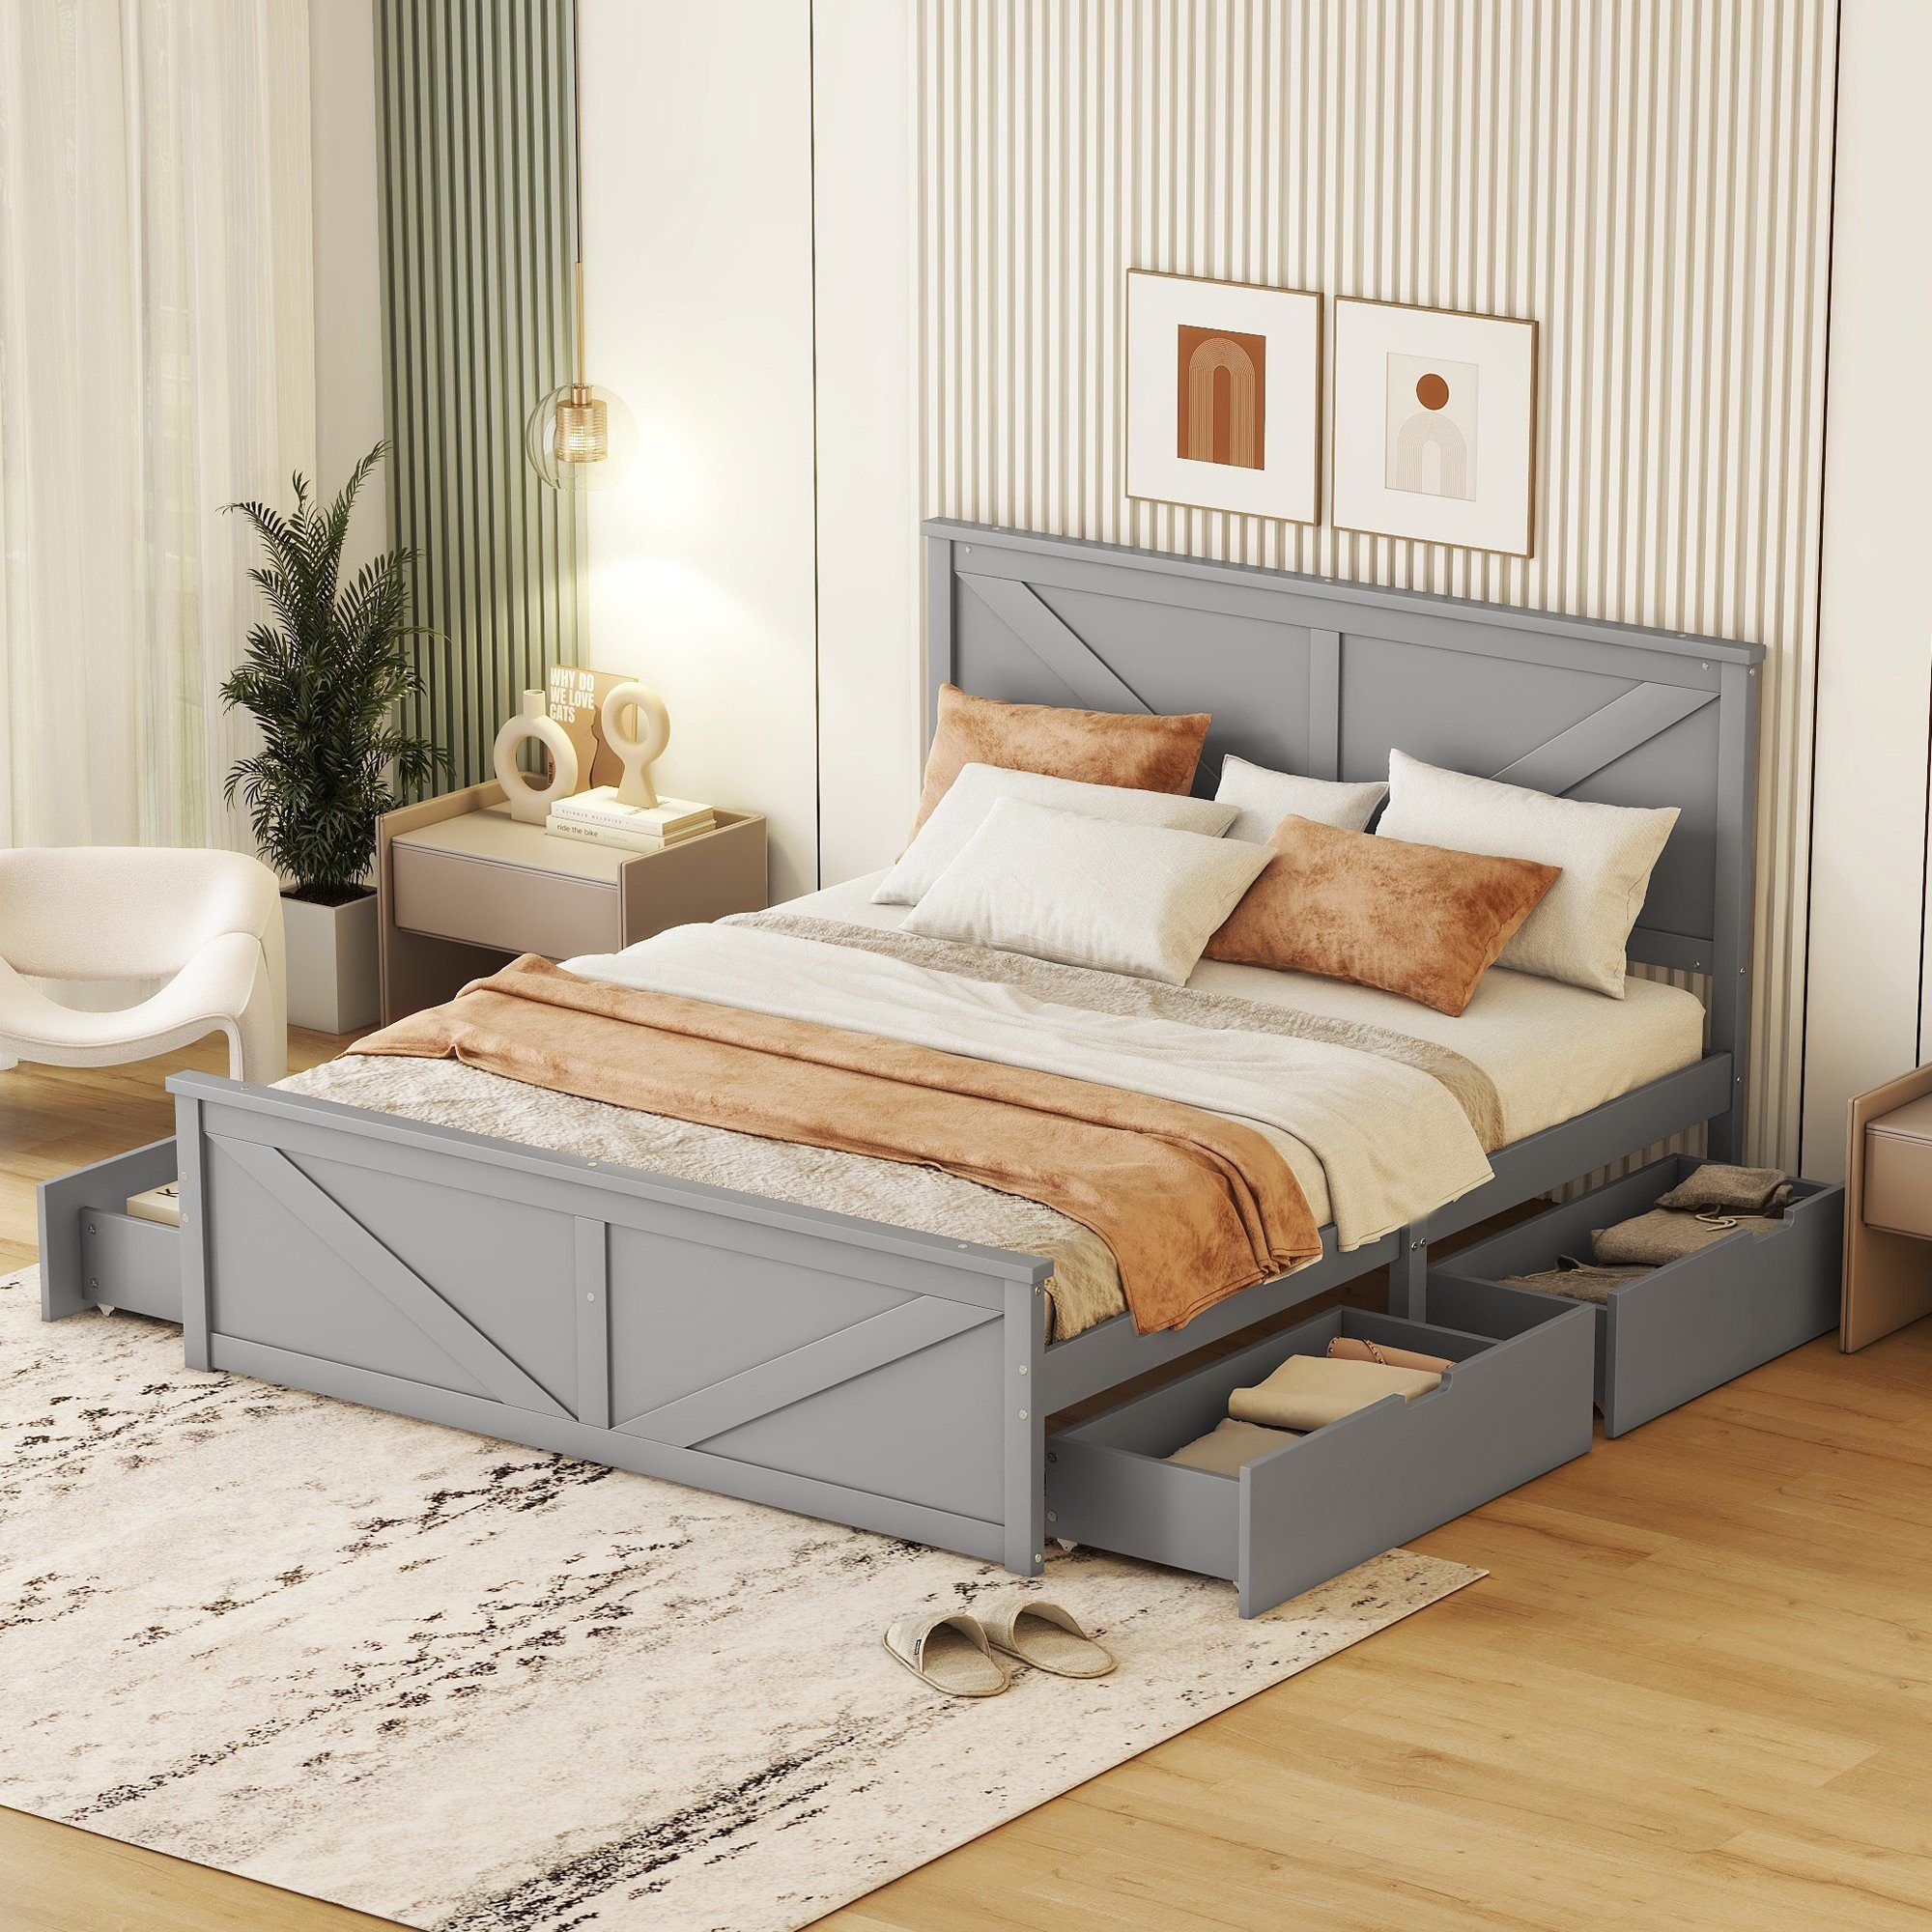 SOFTWEARY Massivholzbett Doppelbett mit Lattenrost, Kopfteil und 4 Schubladen (160x200 cm), Holzbett aus Kiefer grau